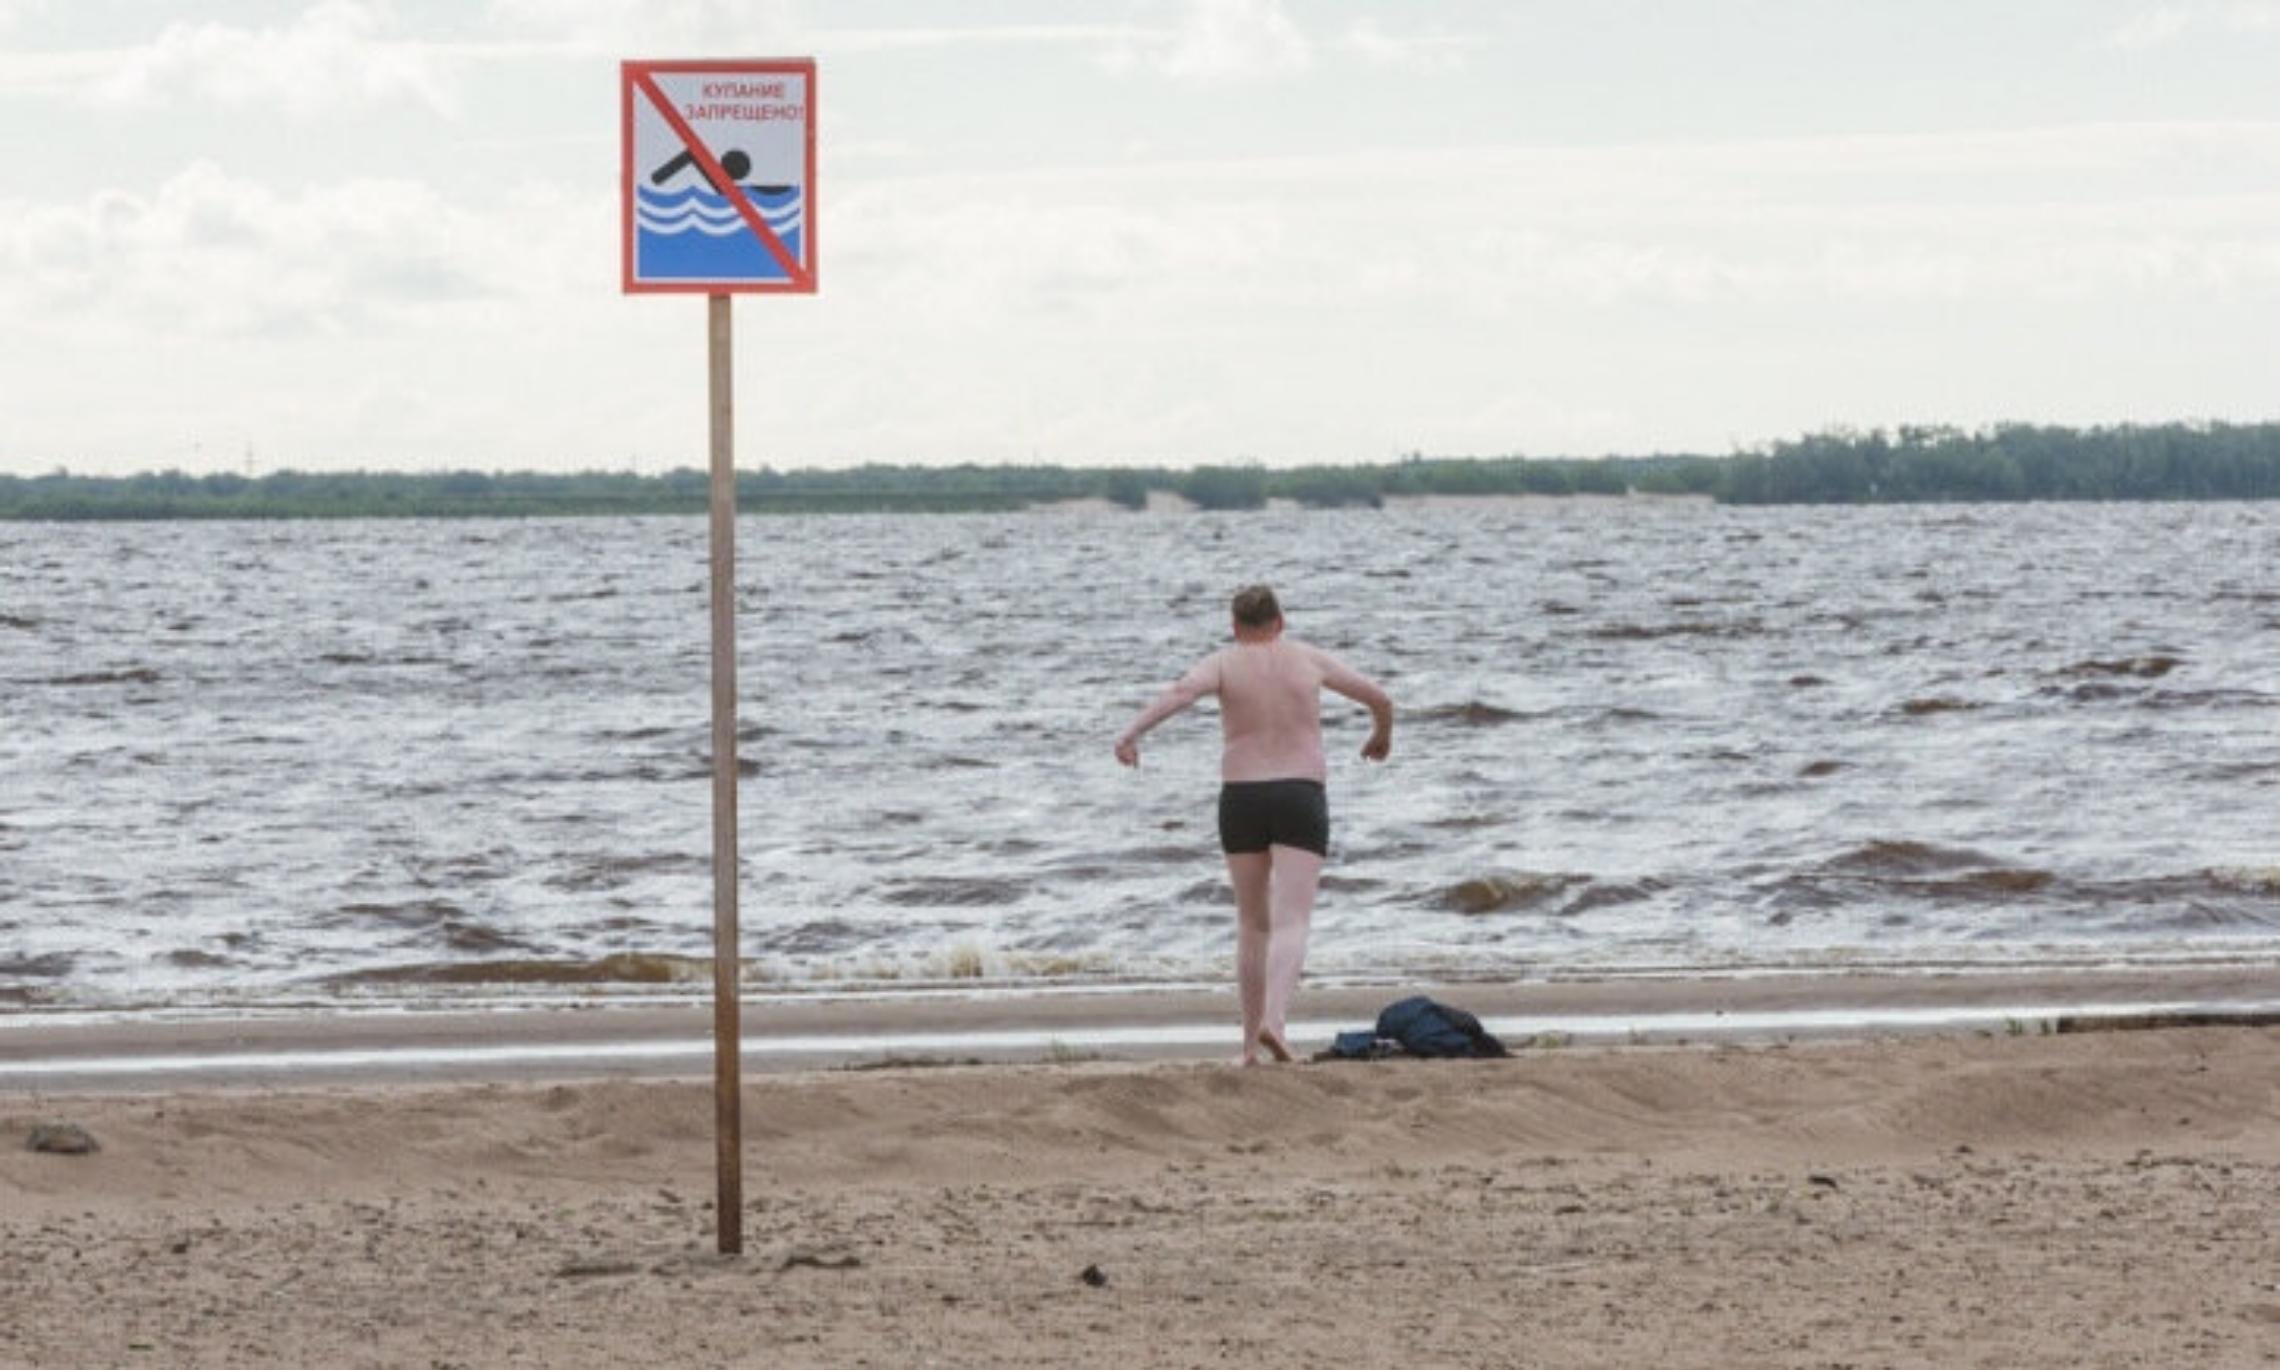 Август можно ли купаться. Место для купания. Купание в неположенном месте. Купаться запрещено. Архангельское пляж.